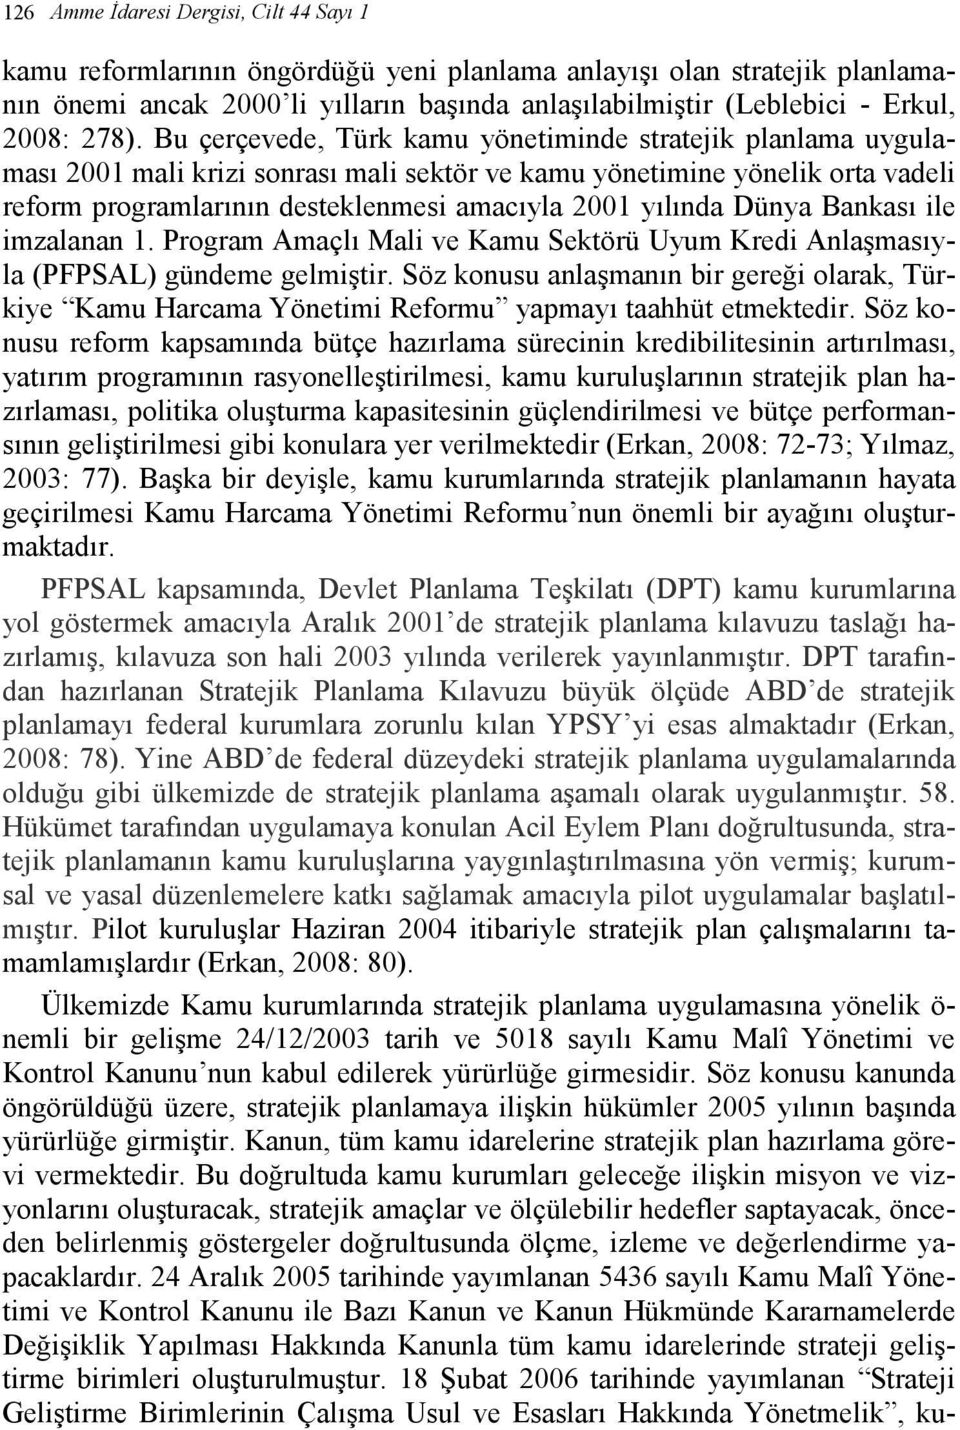 Bu çerçevede, Türk kamu yönetiminde stratejik planlama uygulaması 2001 mali krizi sonrası mali sektör ve kamu yönetimine yönelik orta vadeli reform programlarının desteklenmesi amacıyla 2001 yılında